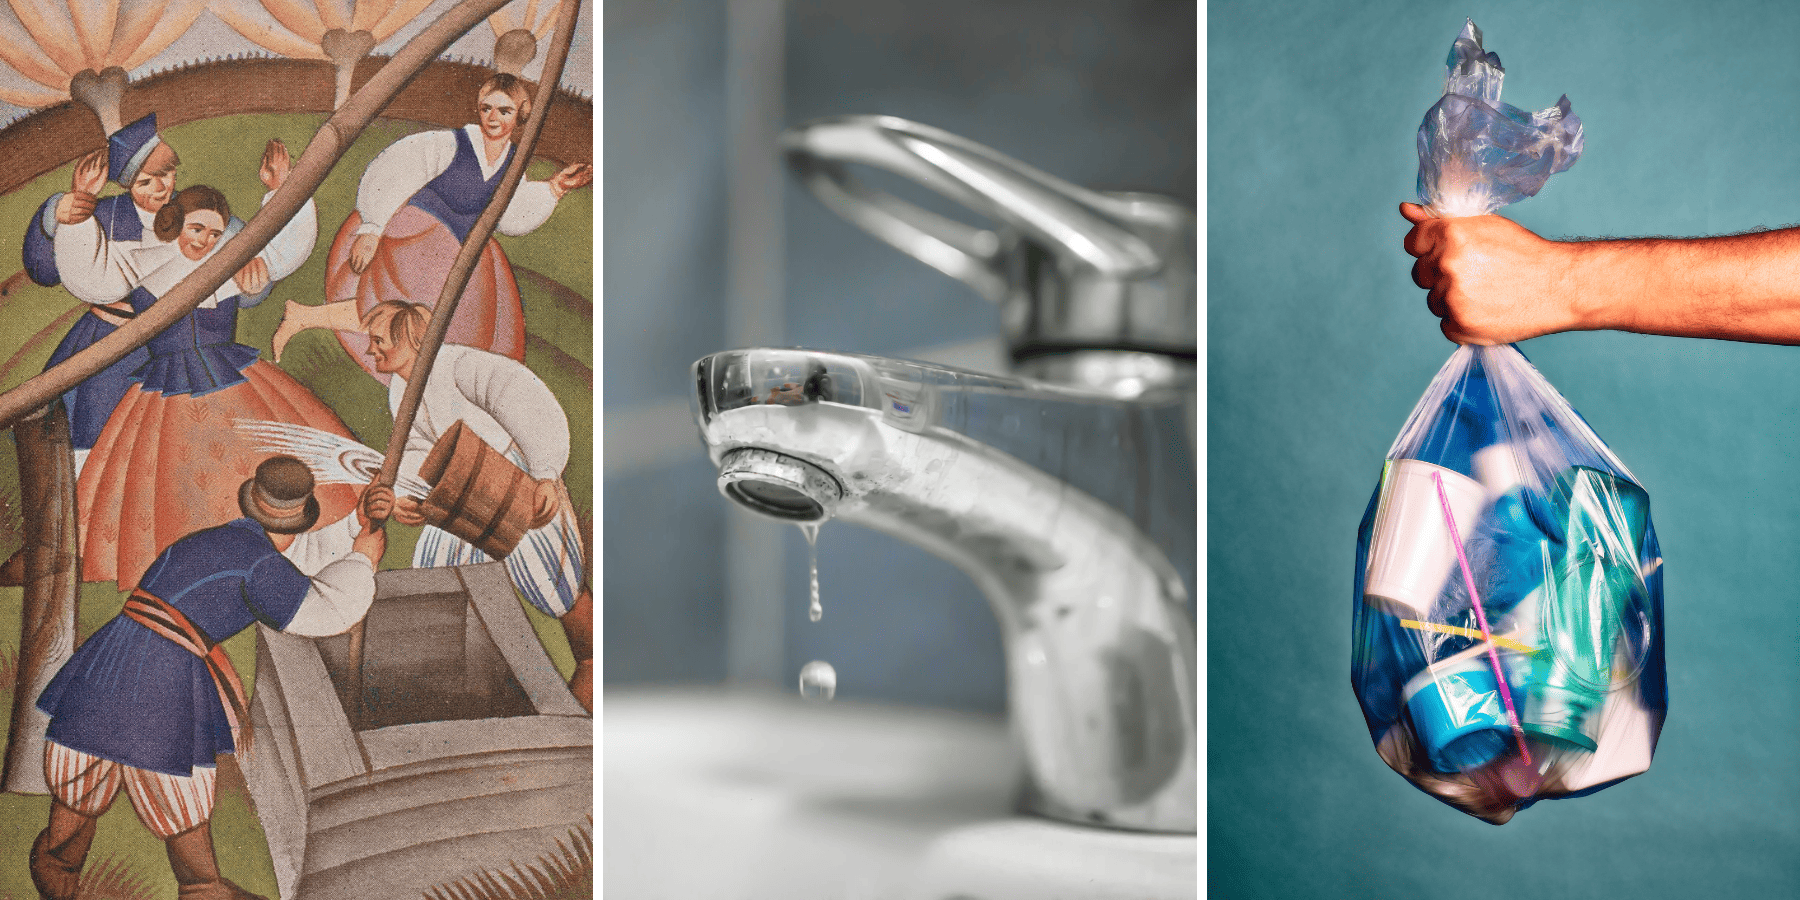 Lany poniedziałek – piękny ludowy zwyczaj czy tradycja marnowania wody?